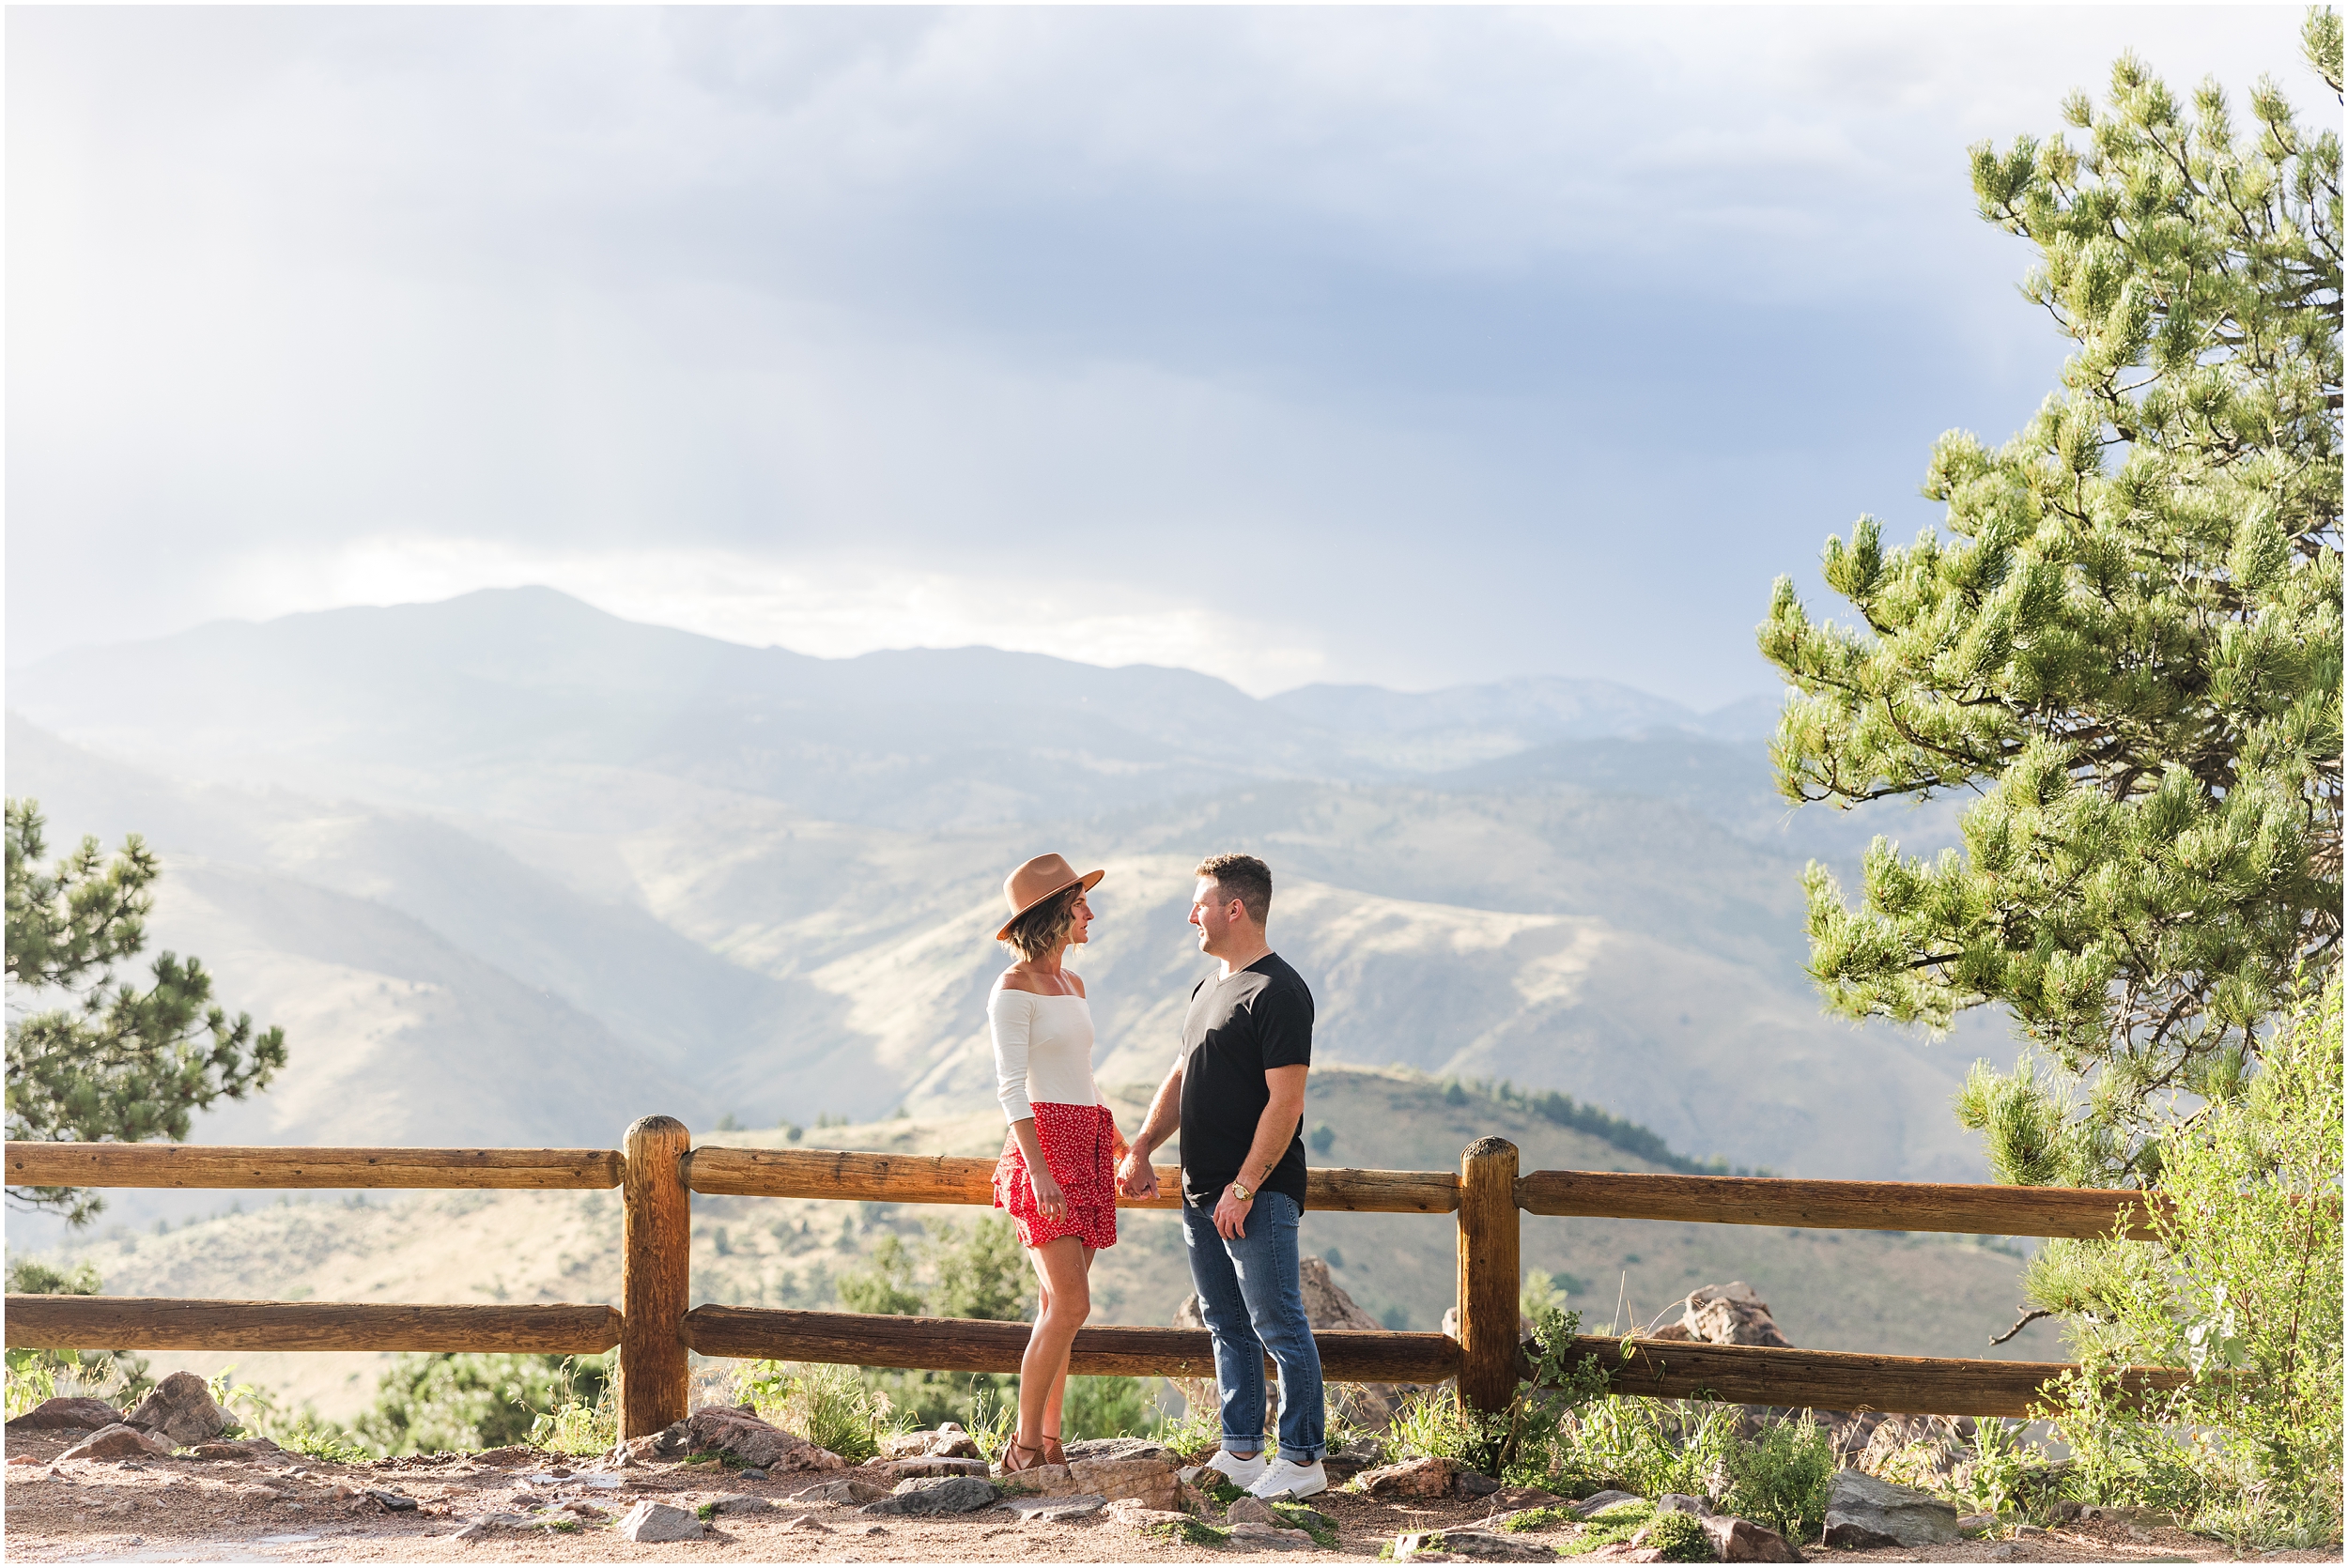 Corey & Dana Lookout Mountain Engagement Golden Colorado Colorado Wedding Photographer